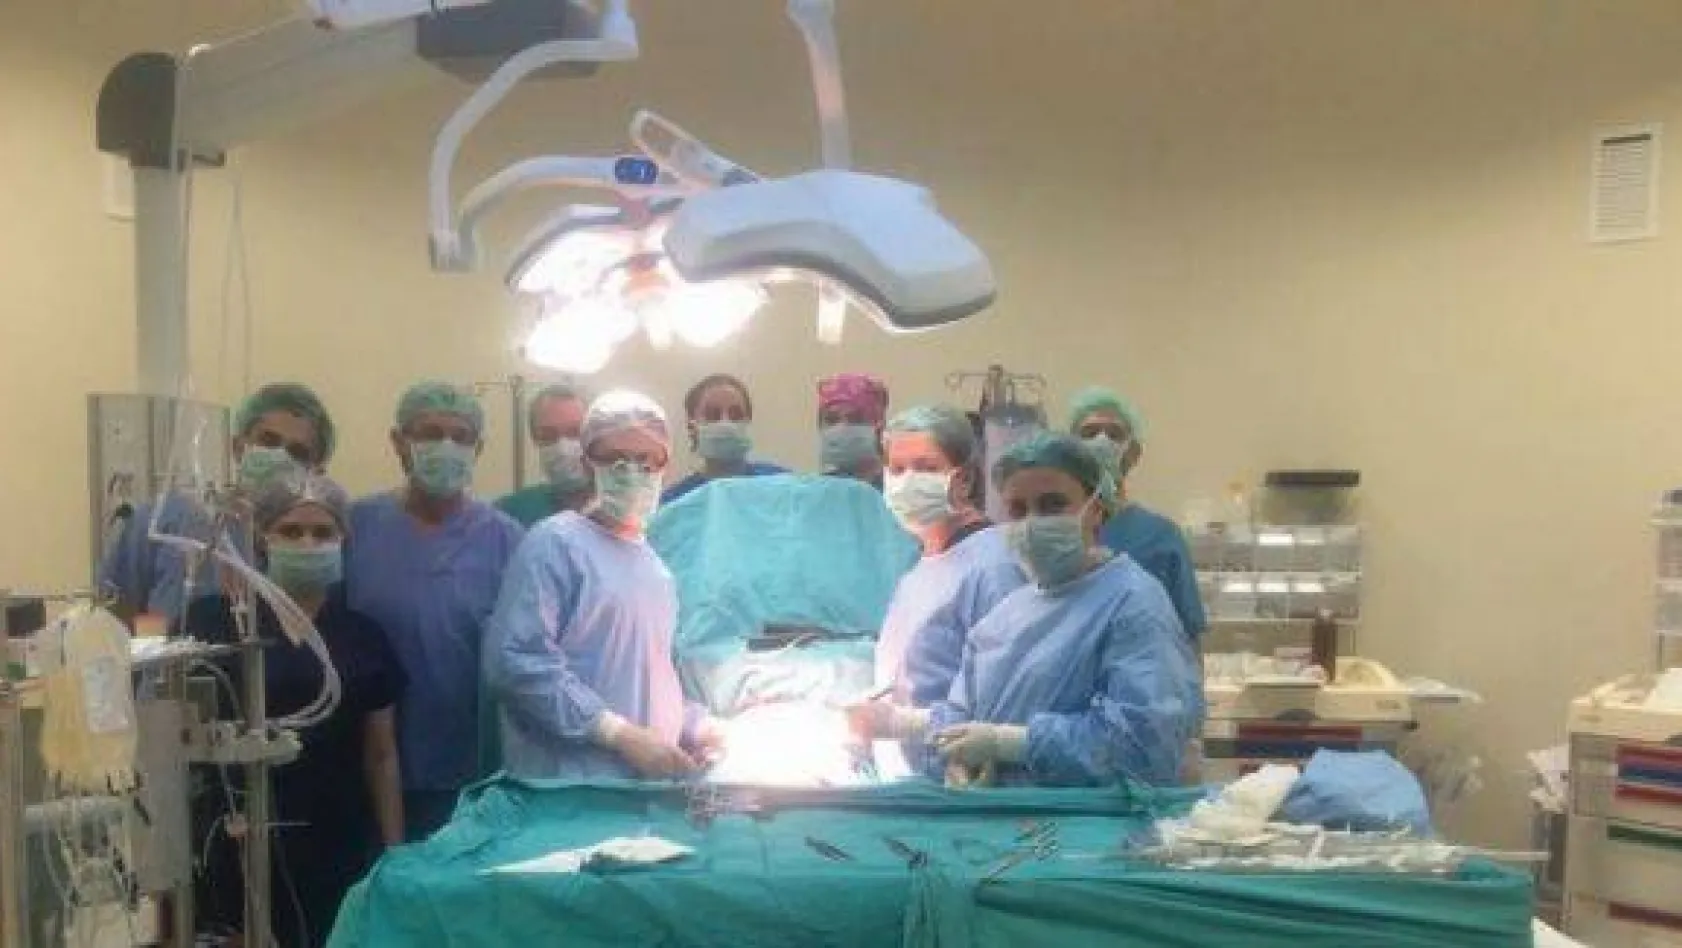 Kastamonu'da ilk bypass ameliyatı gerçekleştirildi